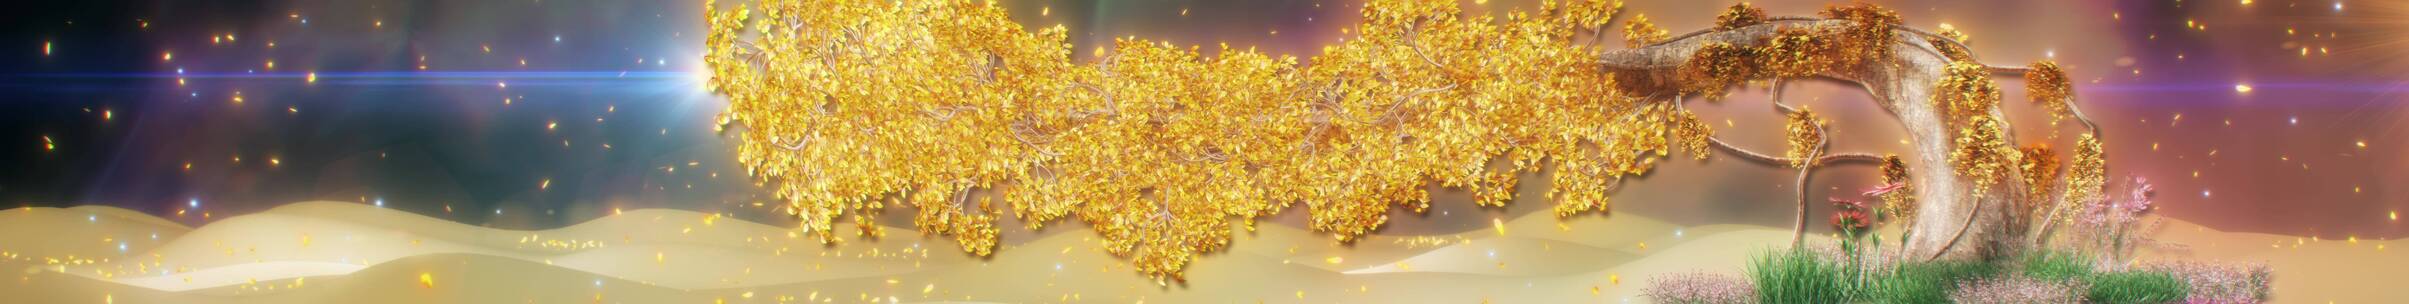 金色粒子树 发光枫叶林